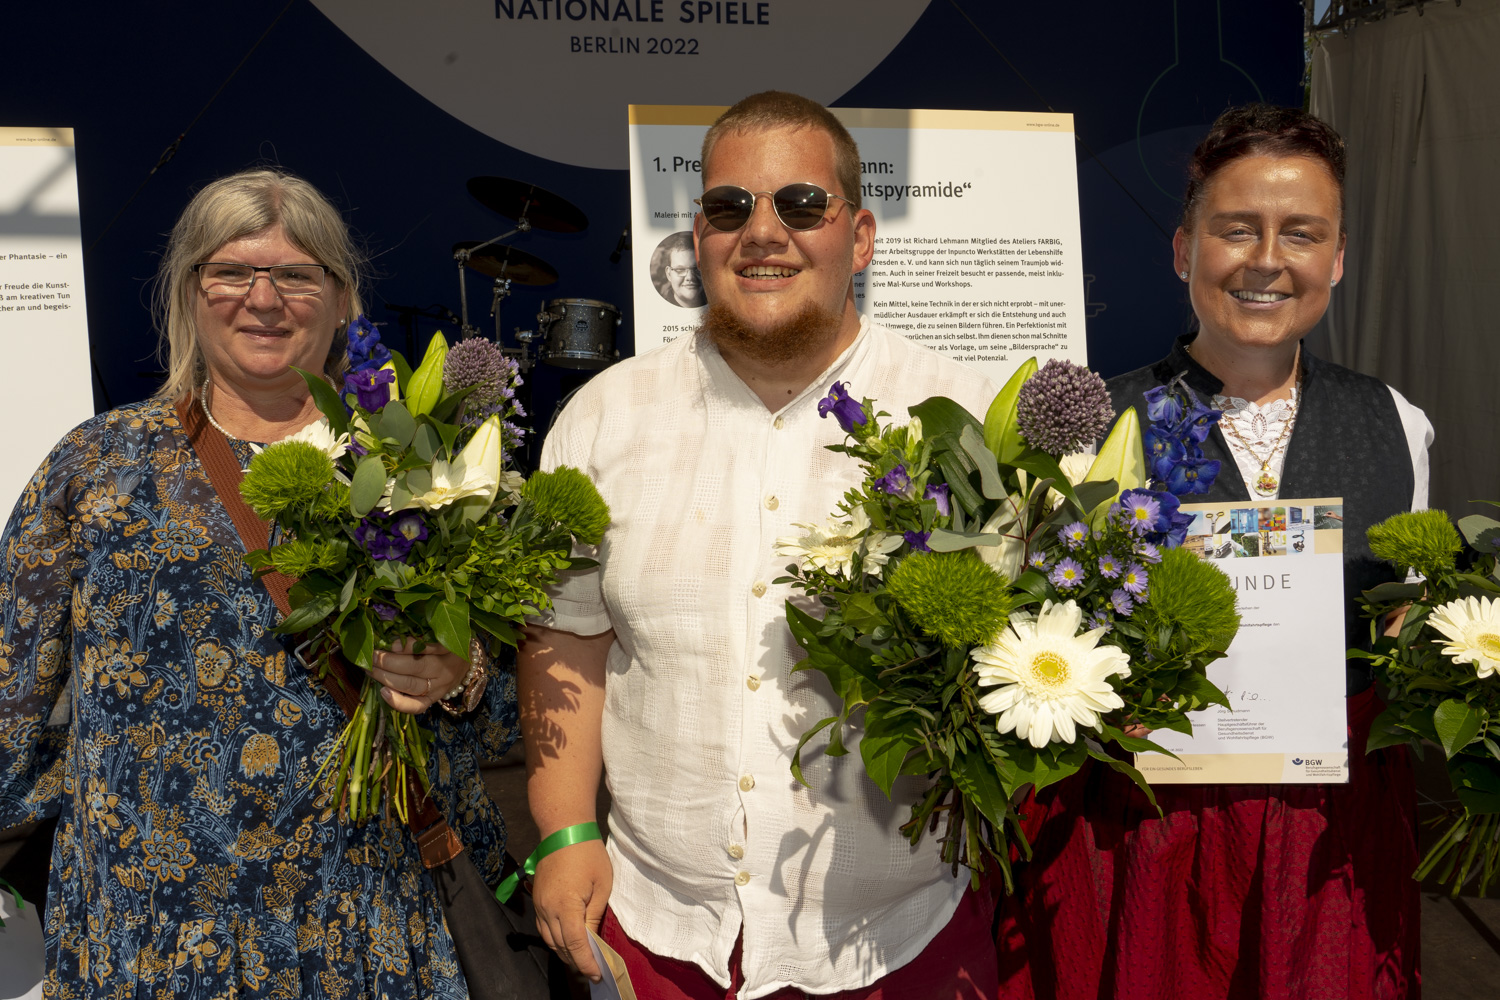  Claudia Bernunzo, Richard Lehmann und Annerose Stadler mit Urkunden und Blumensträußen